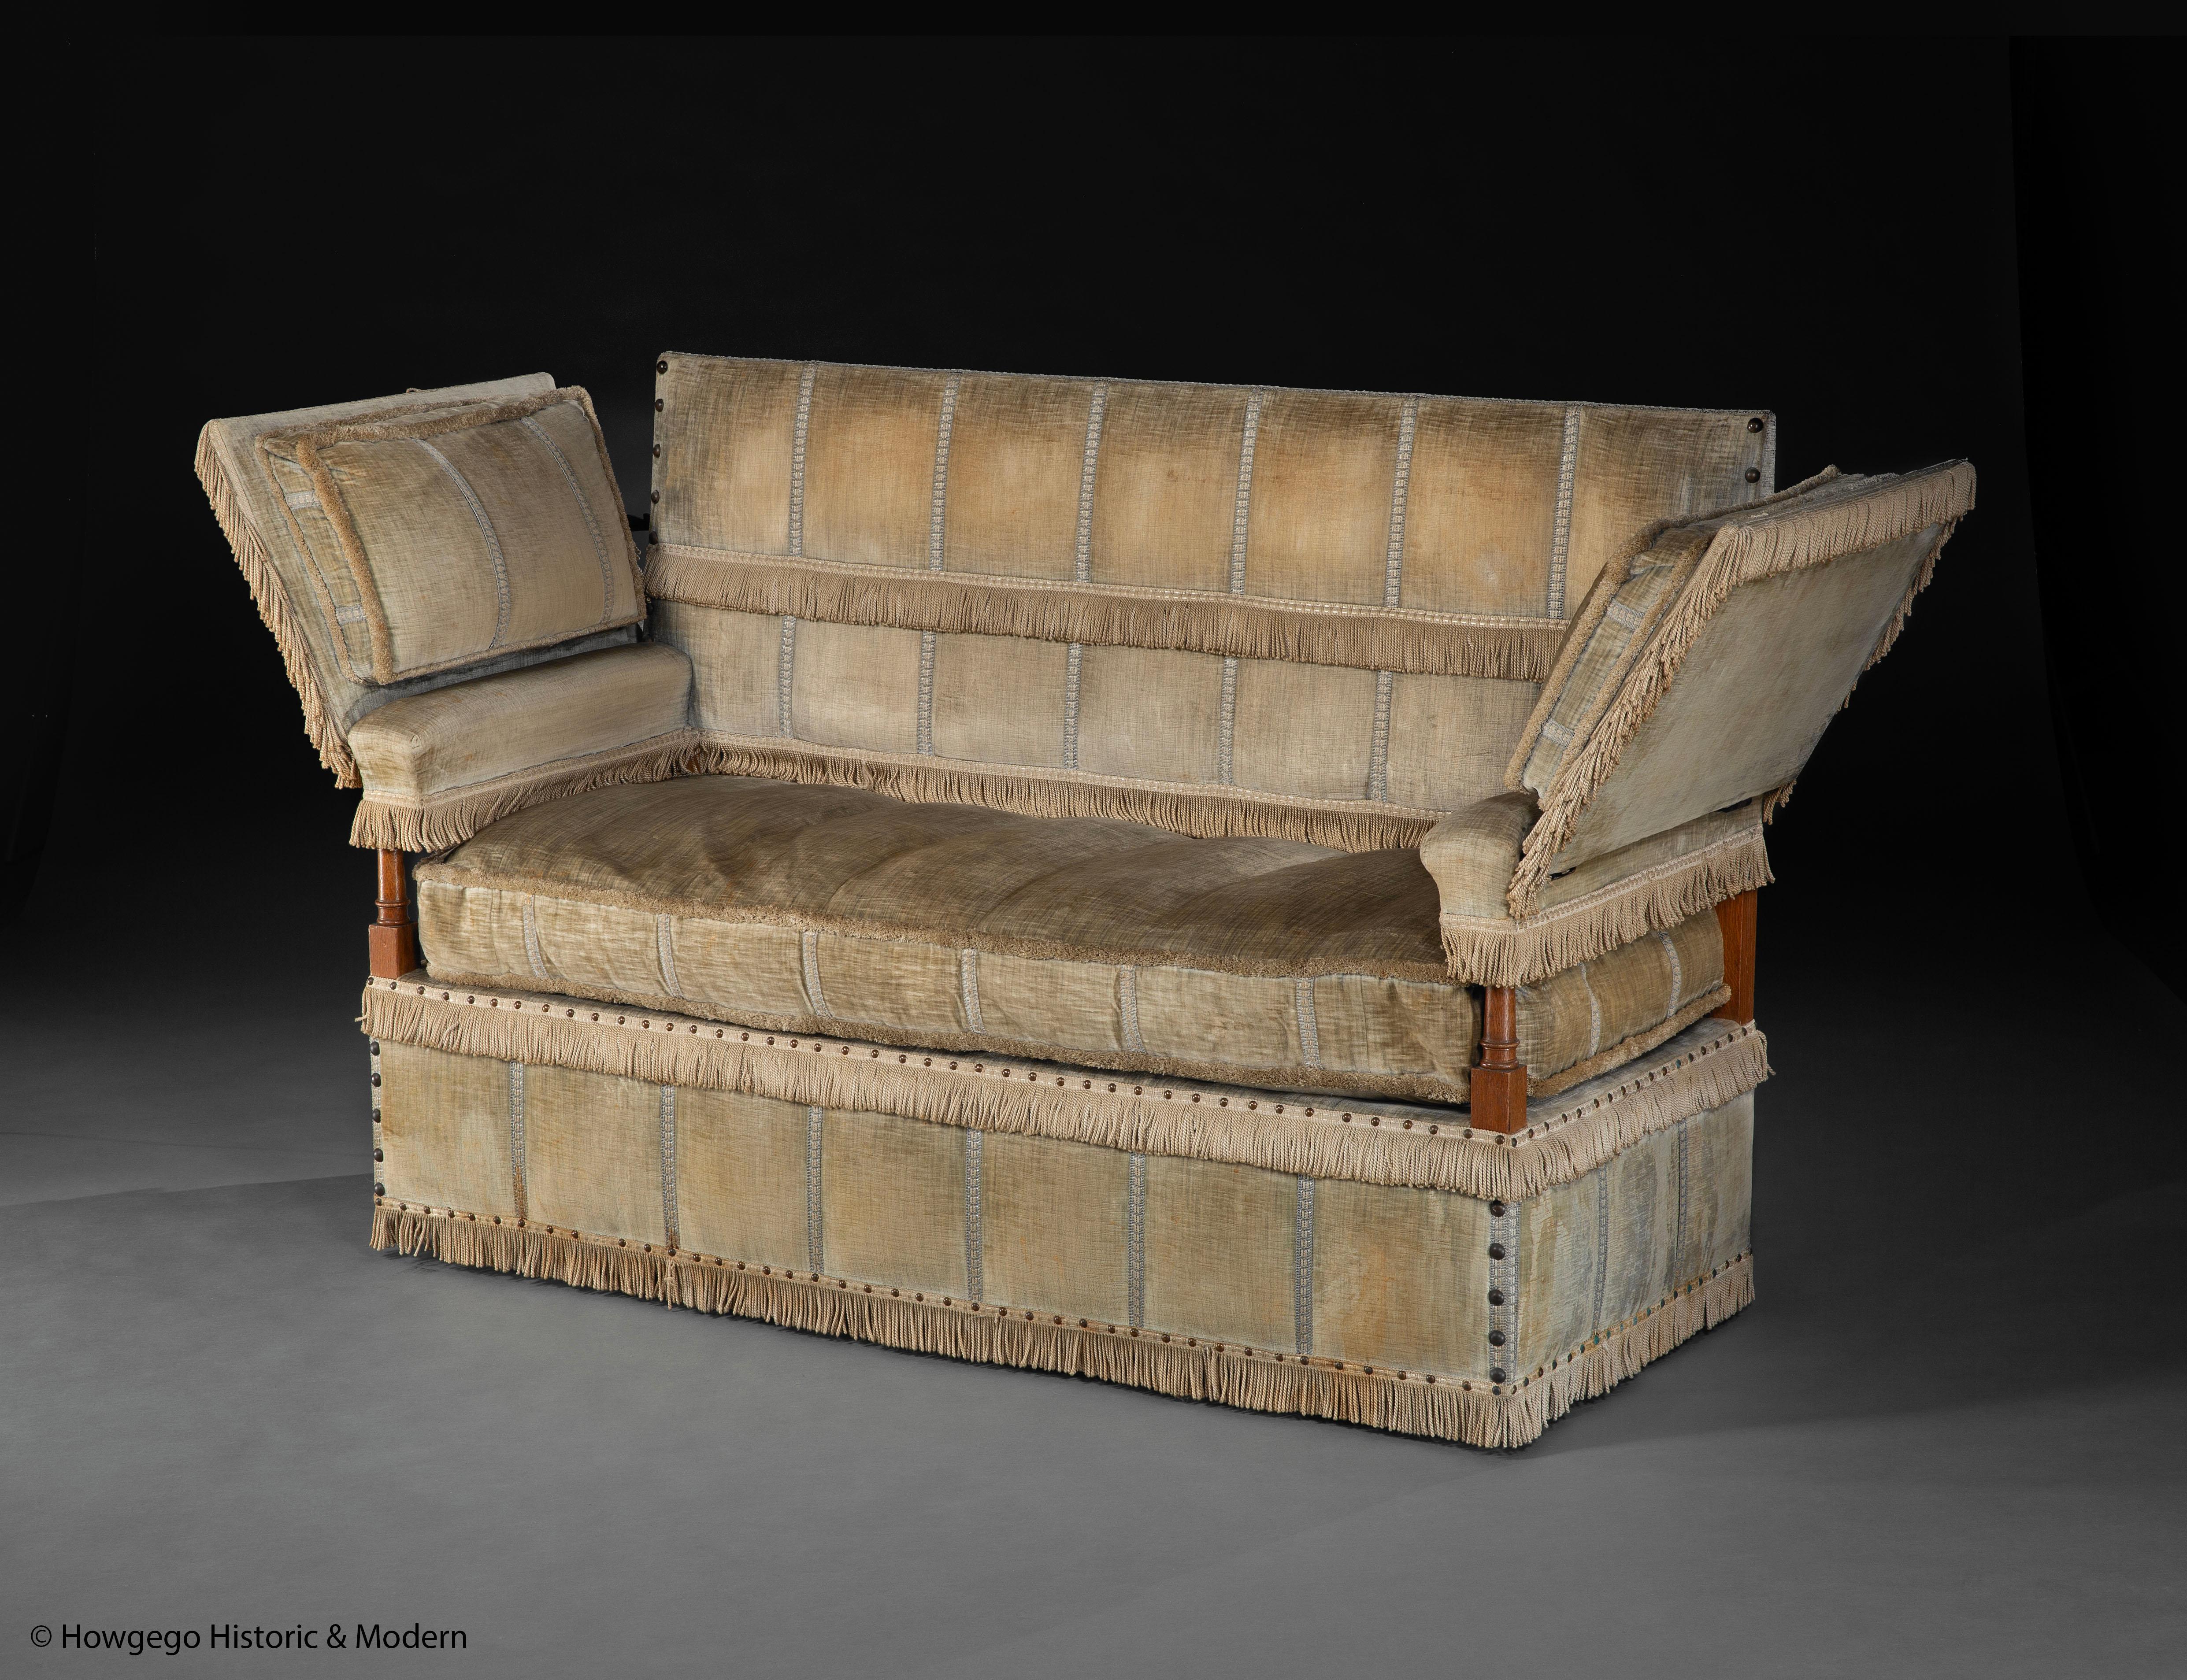 - Dies ist eine Interpretation des frühen 20. Jahrhunderts der berüchtigten, üppig gepolsterten Couch mit klappbaren Armlehnen aus dem 17. Jahrhundert, die in Knole Park, Sevenoaks, Kent, dem Stammsitz der Sackvilles, gefunden wurde und von dem